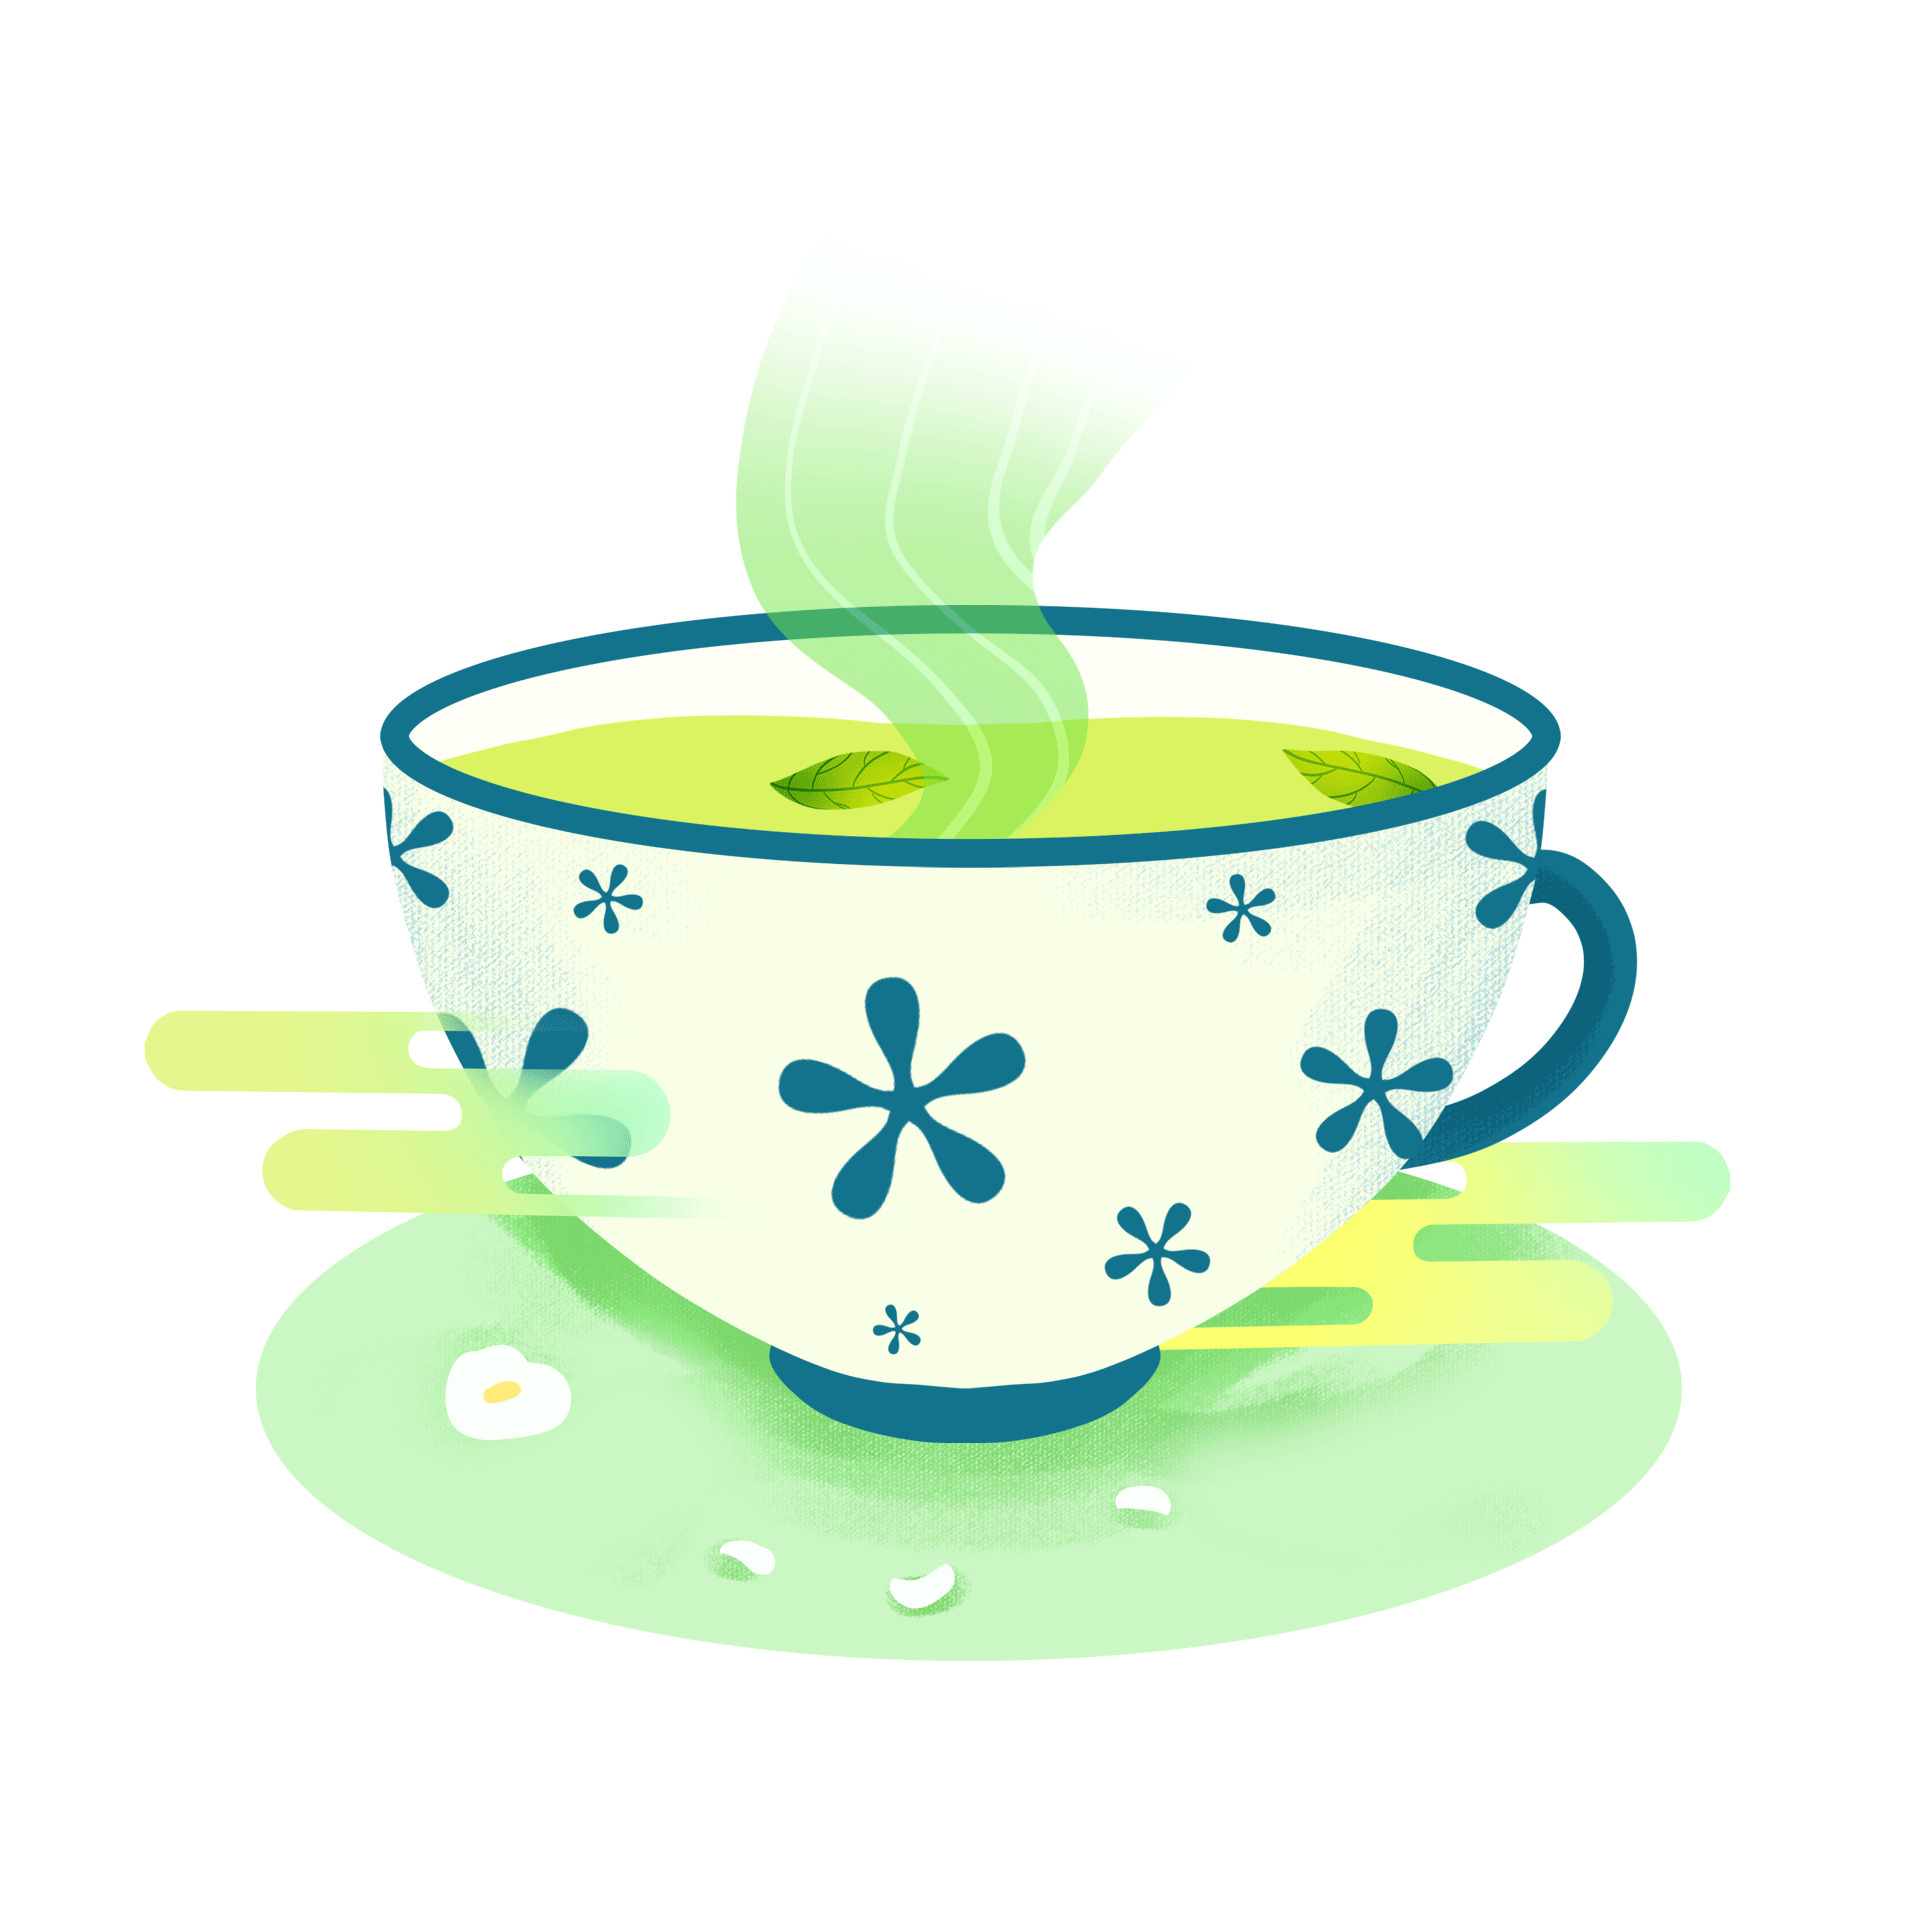 绿色茶叶茶碗祥云元素gif动态图茶叶元素